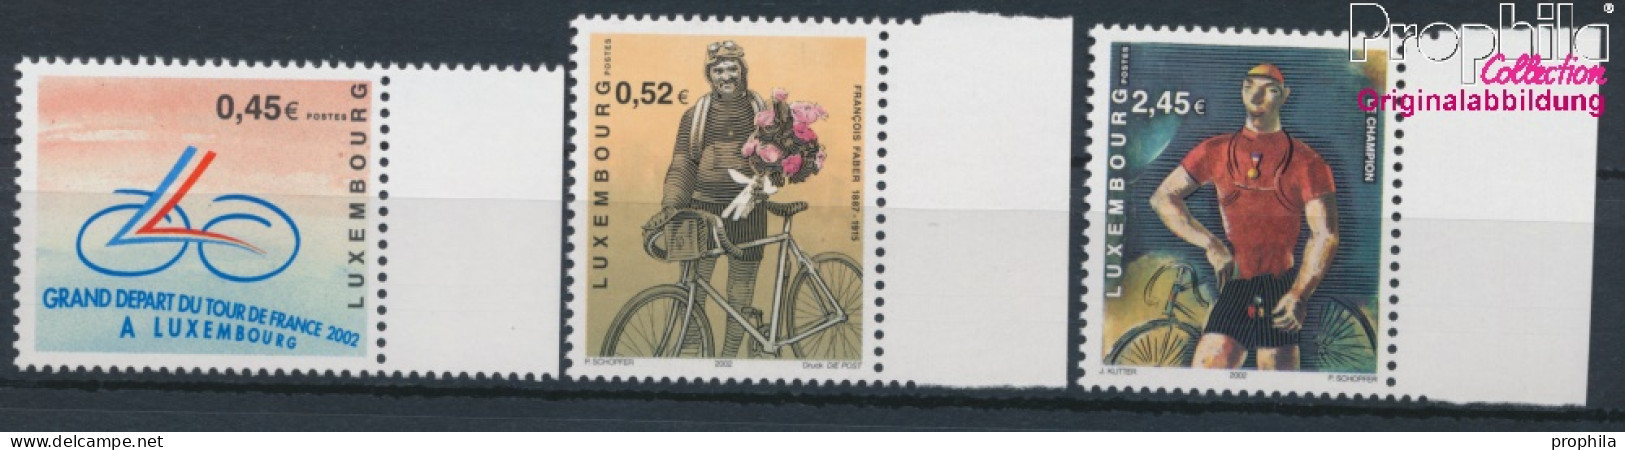 Luxemburg 1574-1576 (kompl.Ausg.) Postfrisch 2002 Radrennen - Tour De France (10331826 - Neufs